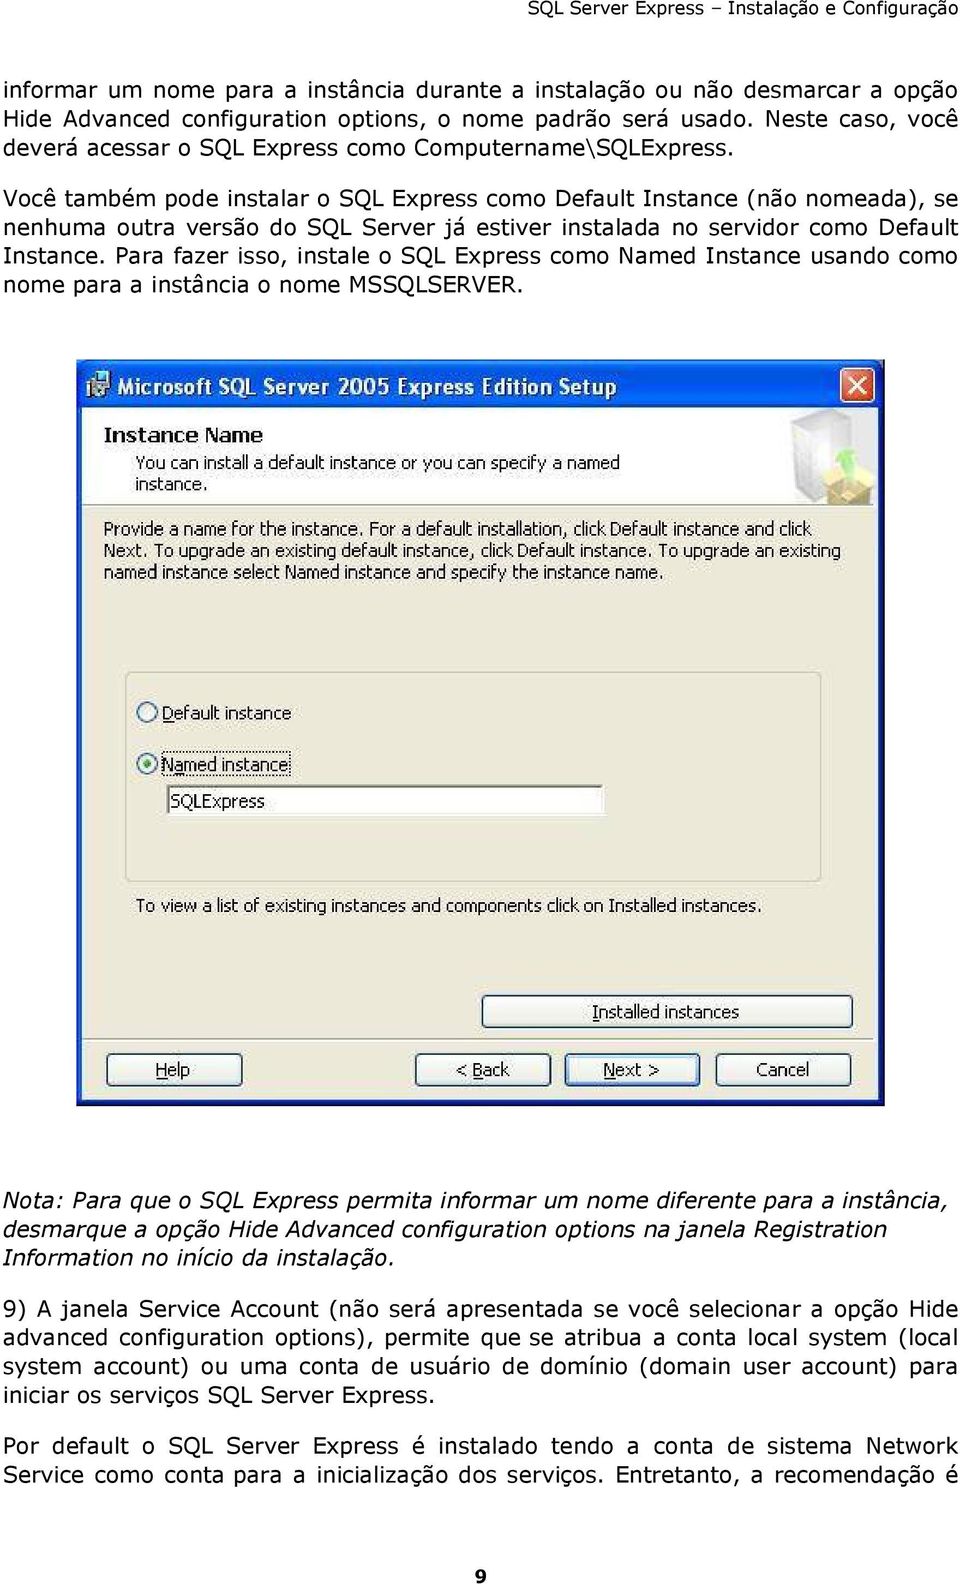 Você também pode instalar o SQL Express como Default Instance (não nomeada), se nenhuma outra versão do SQL Server já estiver instalada no servidor como Default Instance.